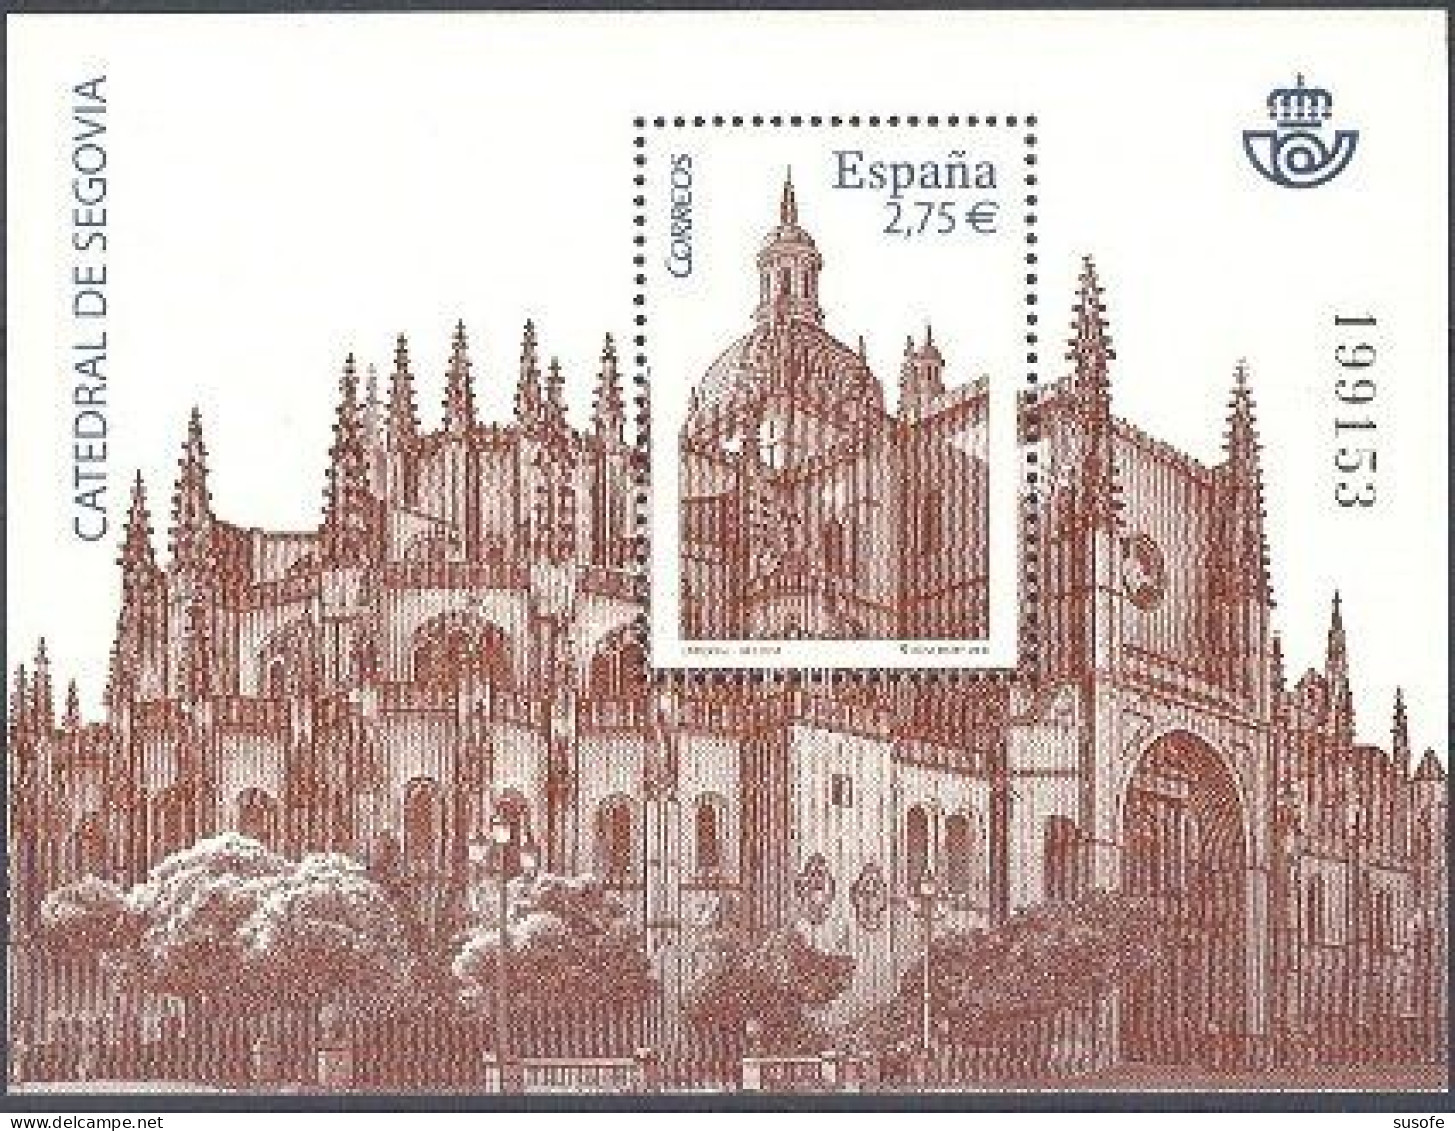 España 2010 Edifil 4580 Sello ** HB Catedral De Segovia Michel BL196 Yvert BF188 Spain Stamp Timbre Espagne Briefmarke - Ungebraucht